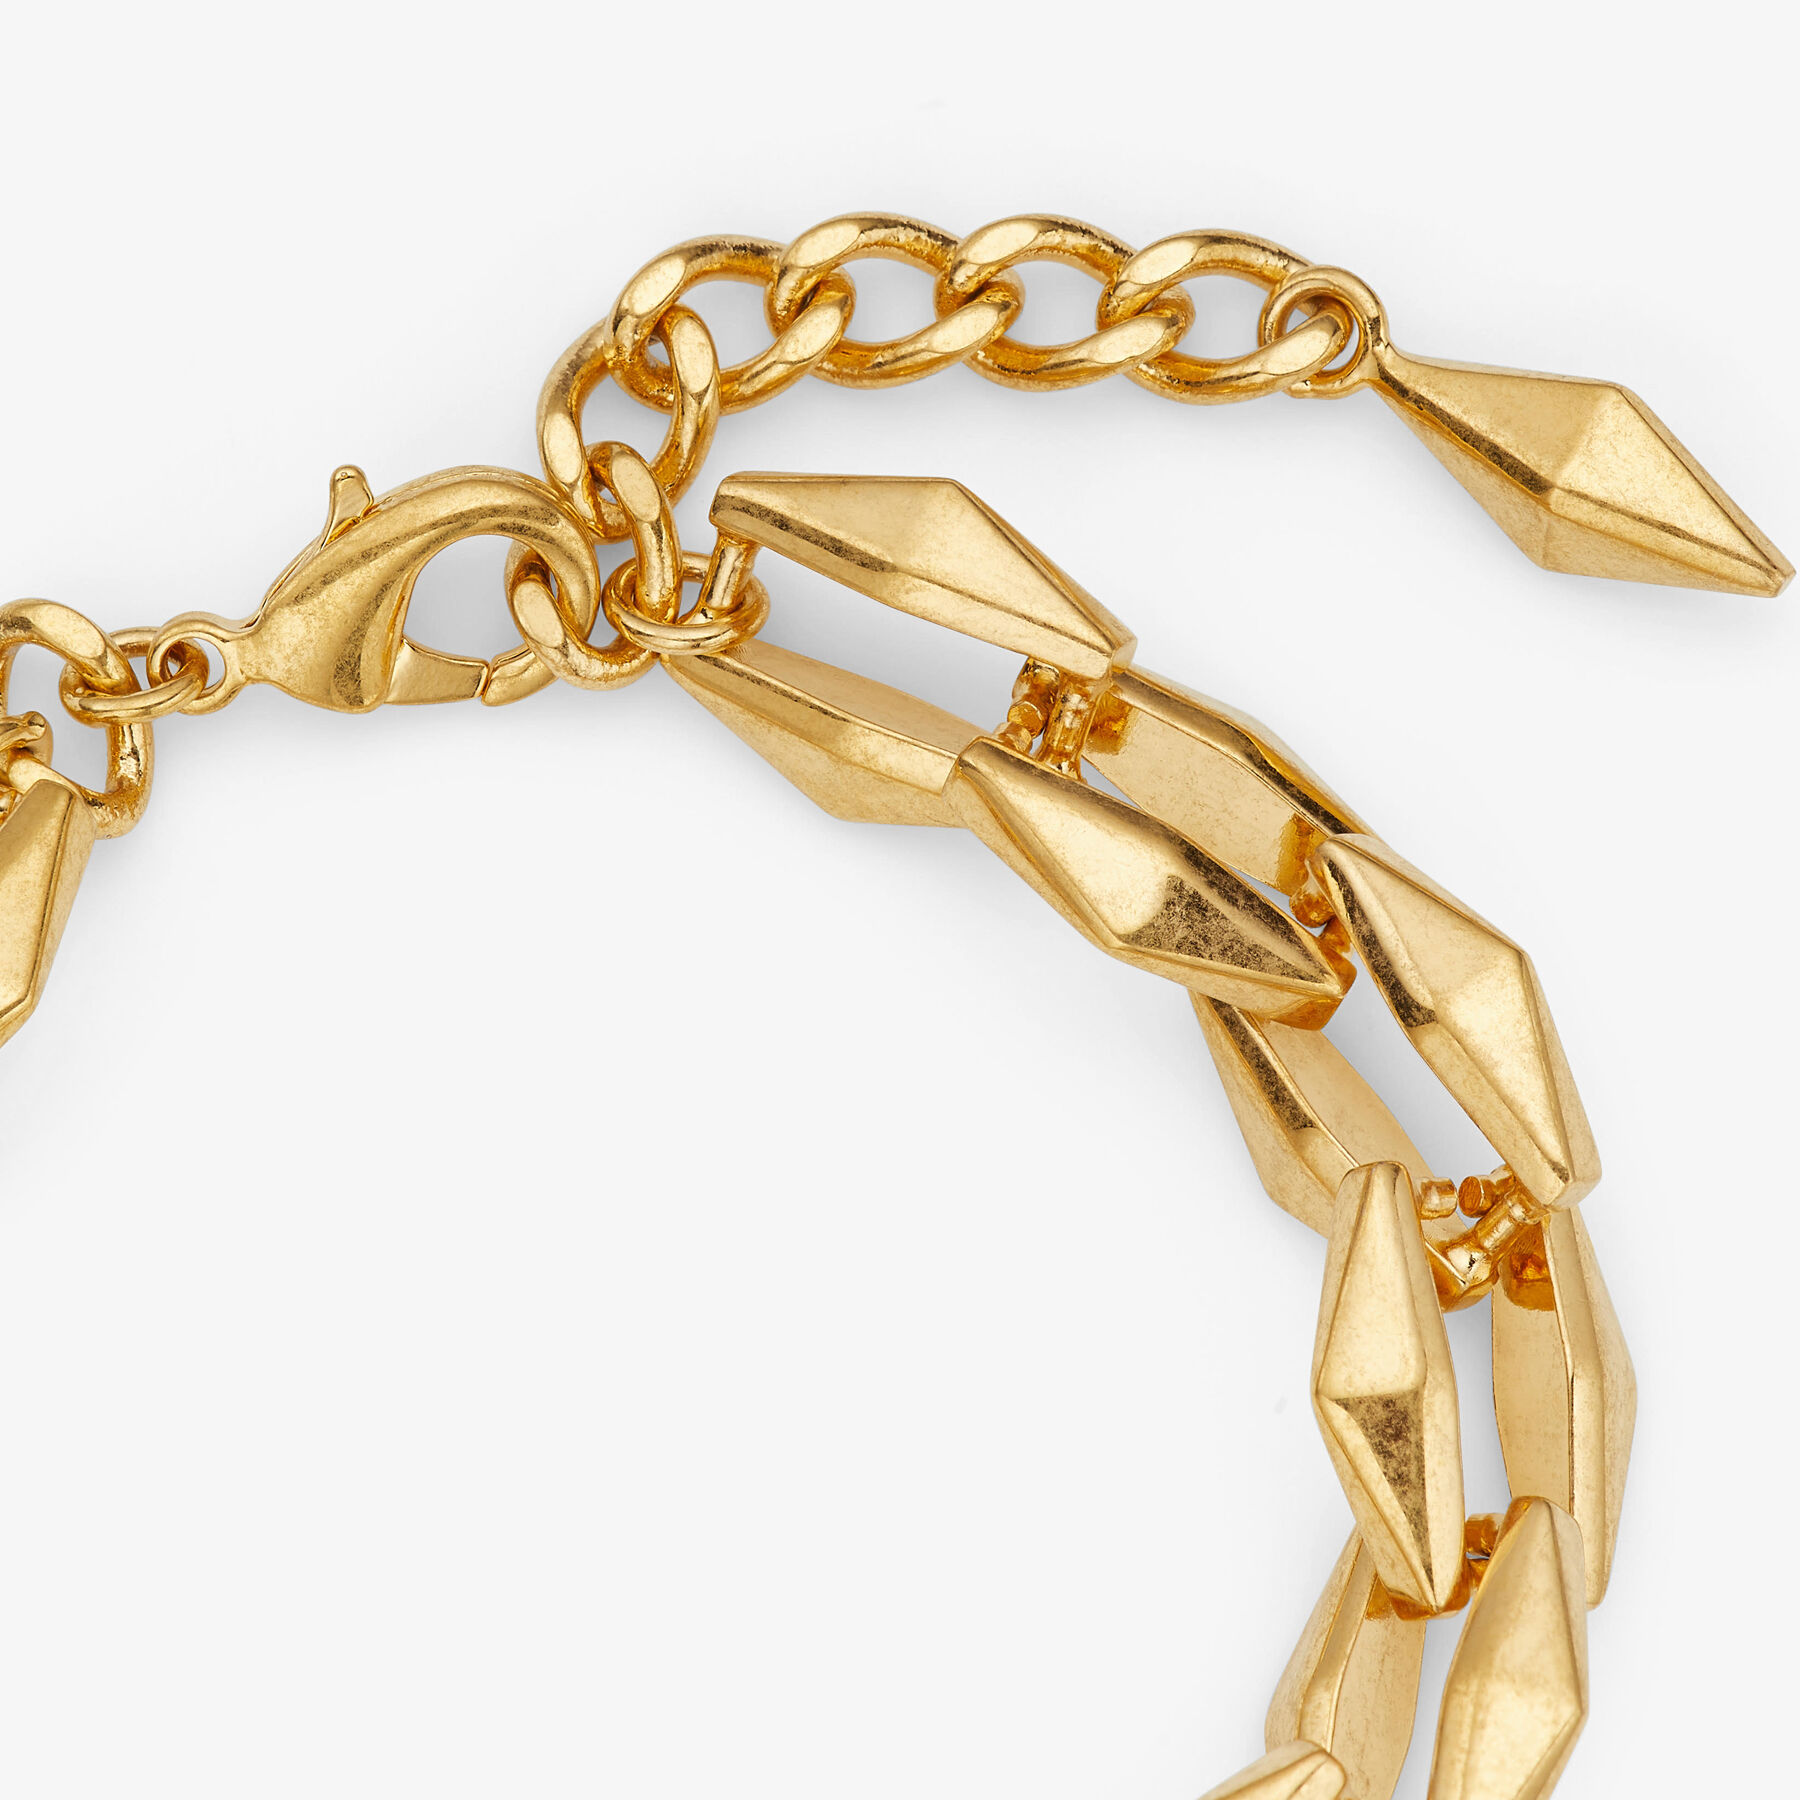 Trendy Gold & Diamond Chain Bracelet |Chain Bracelets For Women & Men